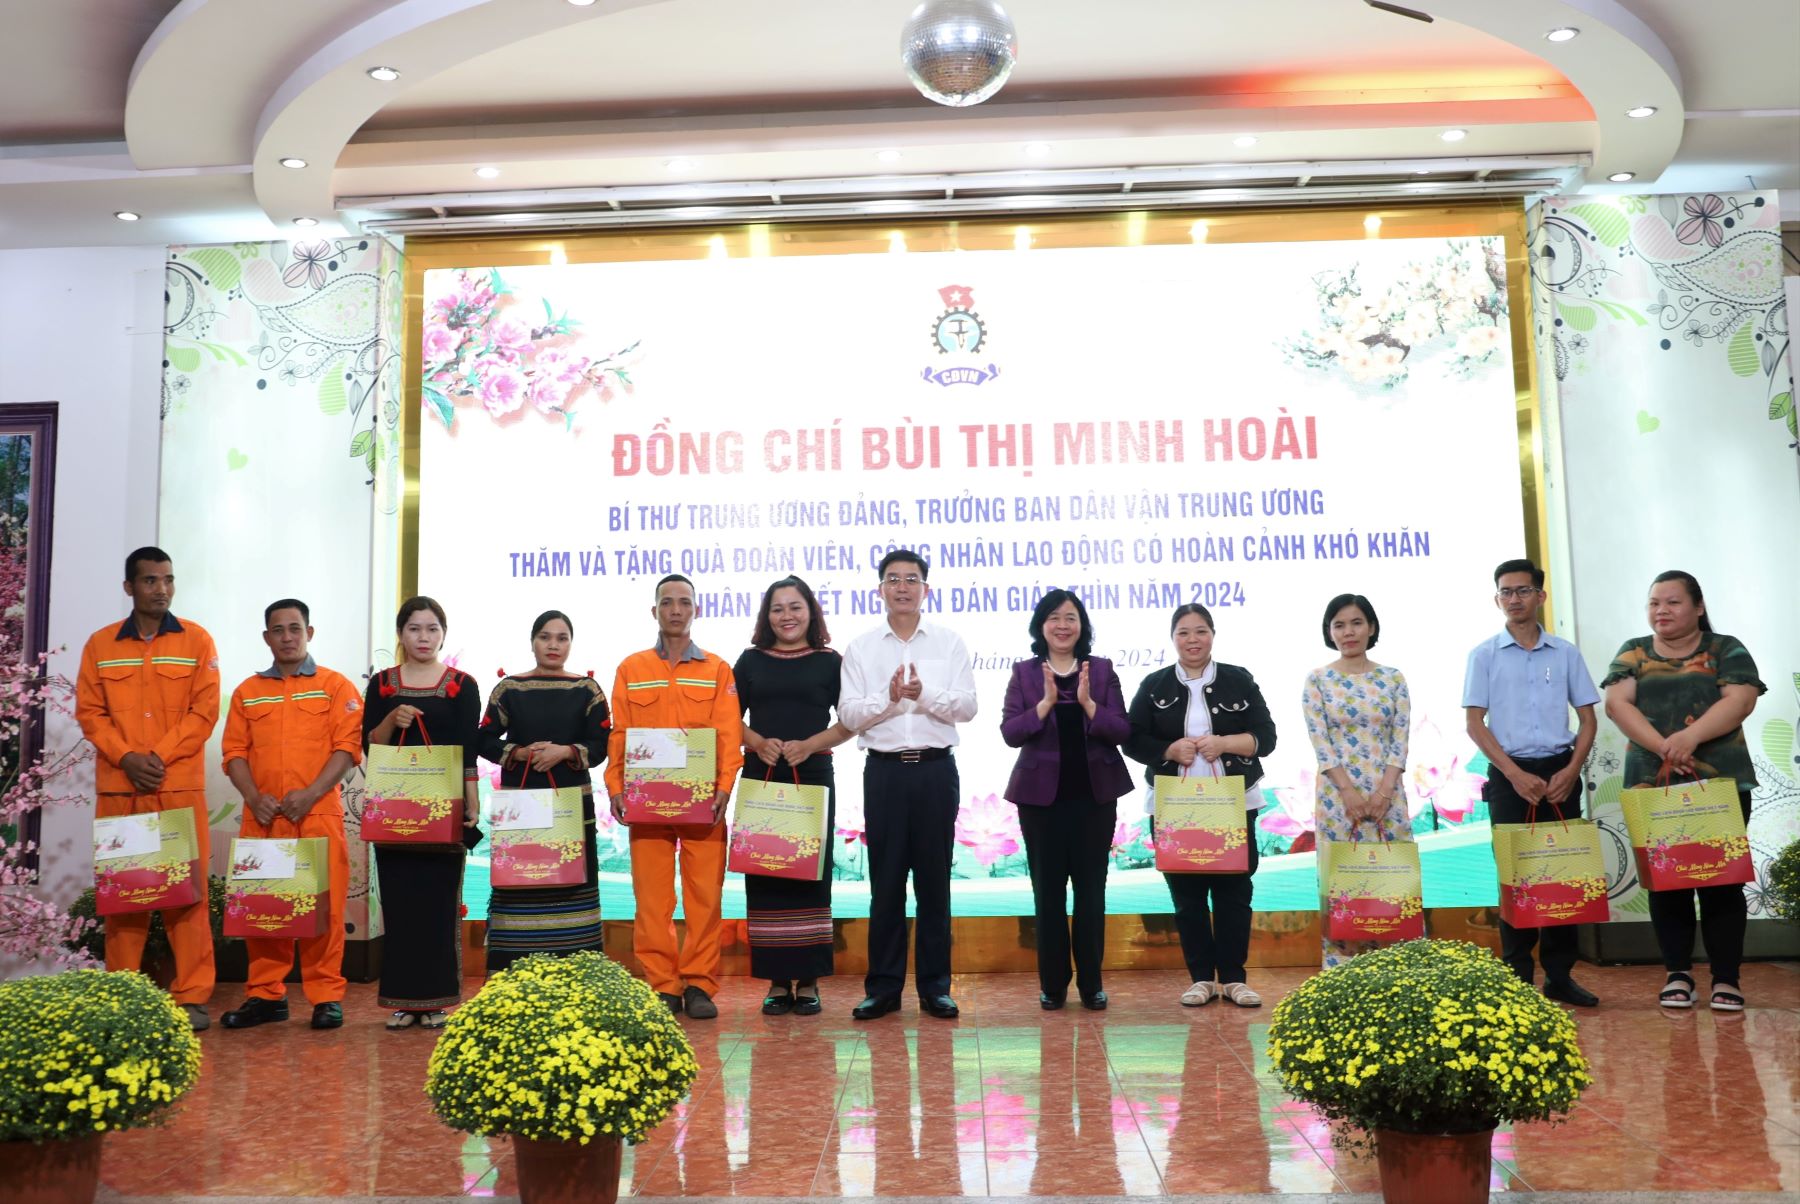 Bí thư Trung ương Đảng, Trưởng Ban Dân vận Trung ương Bùi Thị Minh Hoài thăm và tặng quà Tết cho đoàn viên, người lao động